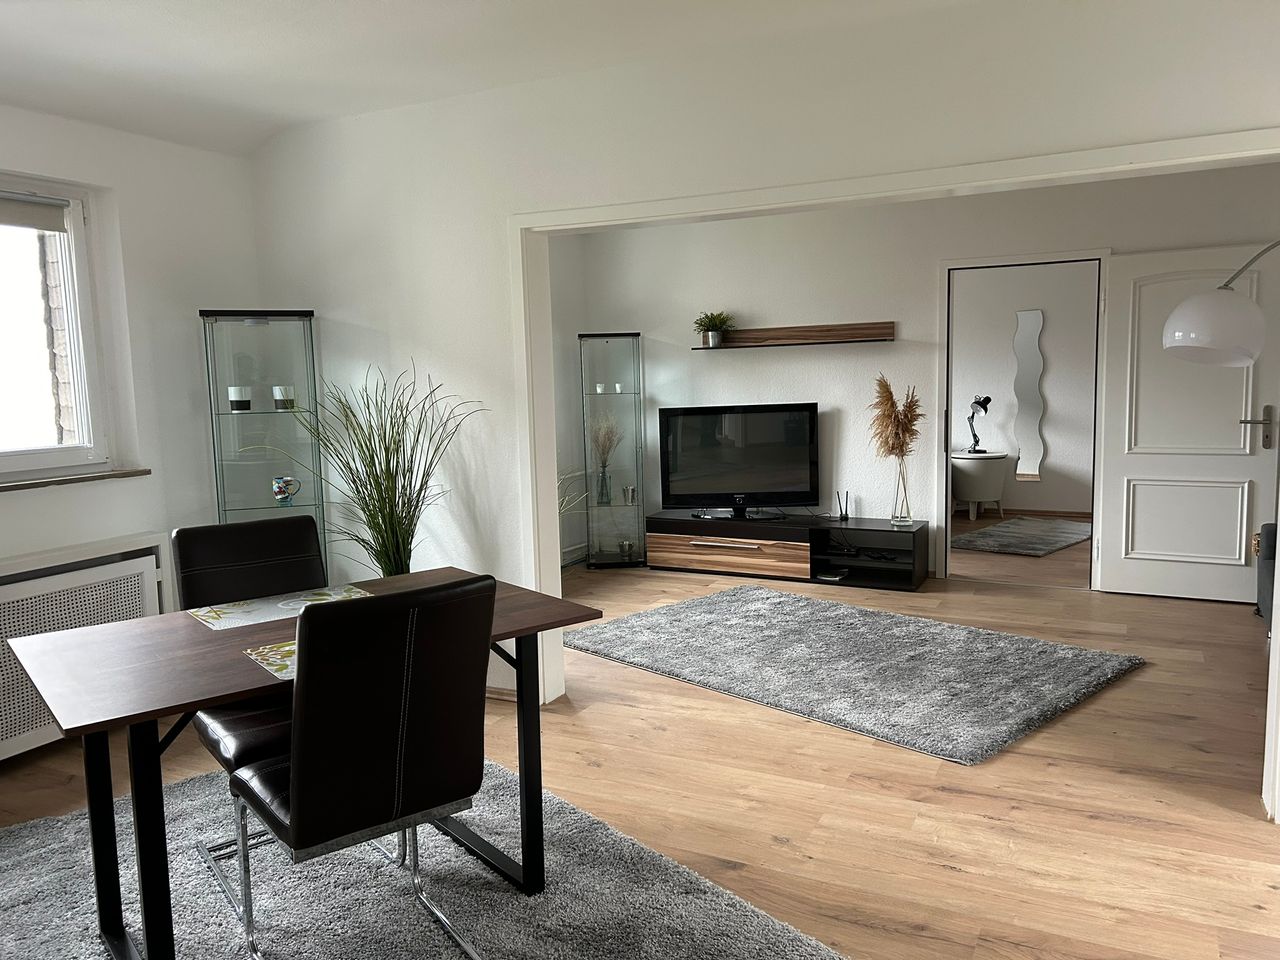 Neu teilsanierte- und renovierte möblierte Wohnung im Essener Süden!